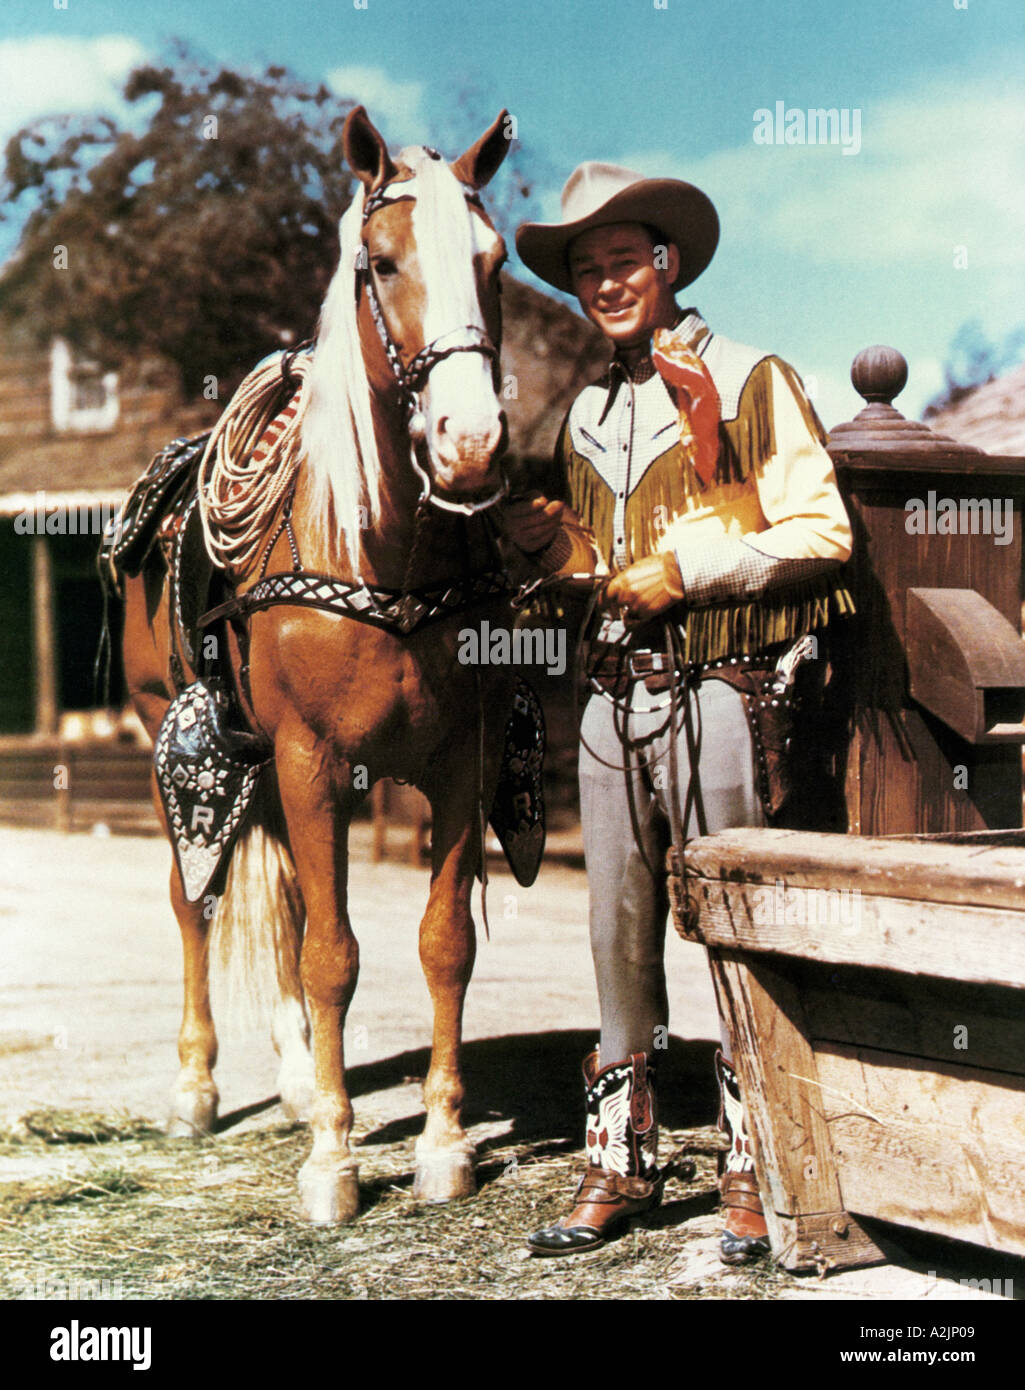 ROY ROGERS singende Cowboy Schauspieler mit seinem Pferd Trigger Stockfoto